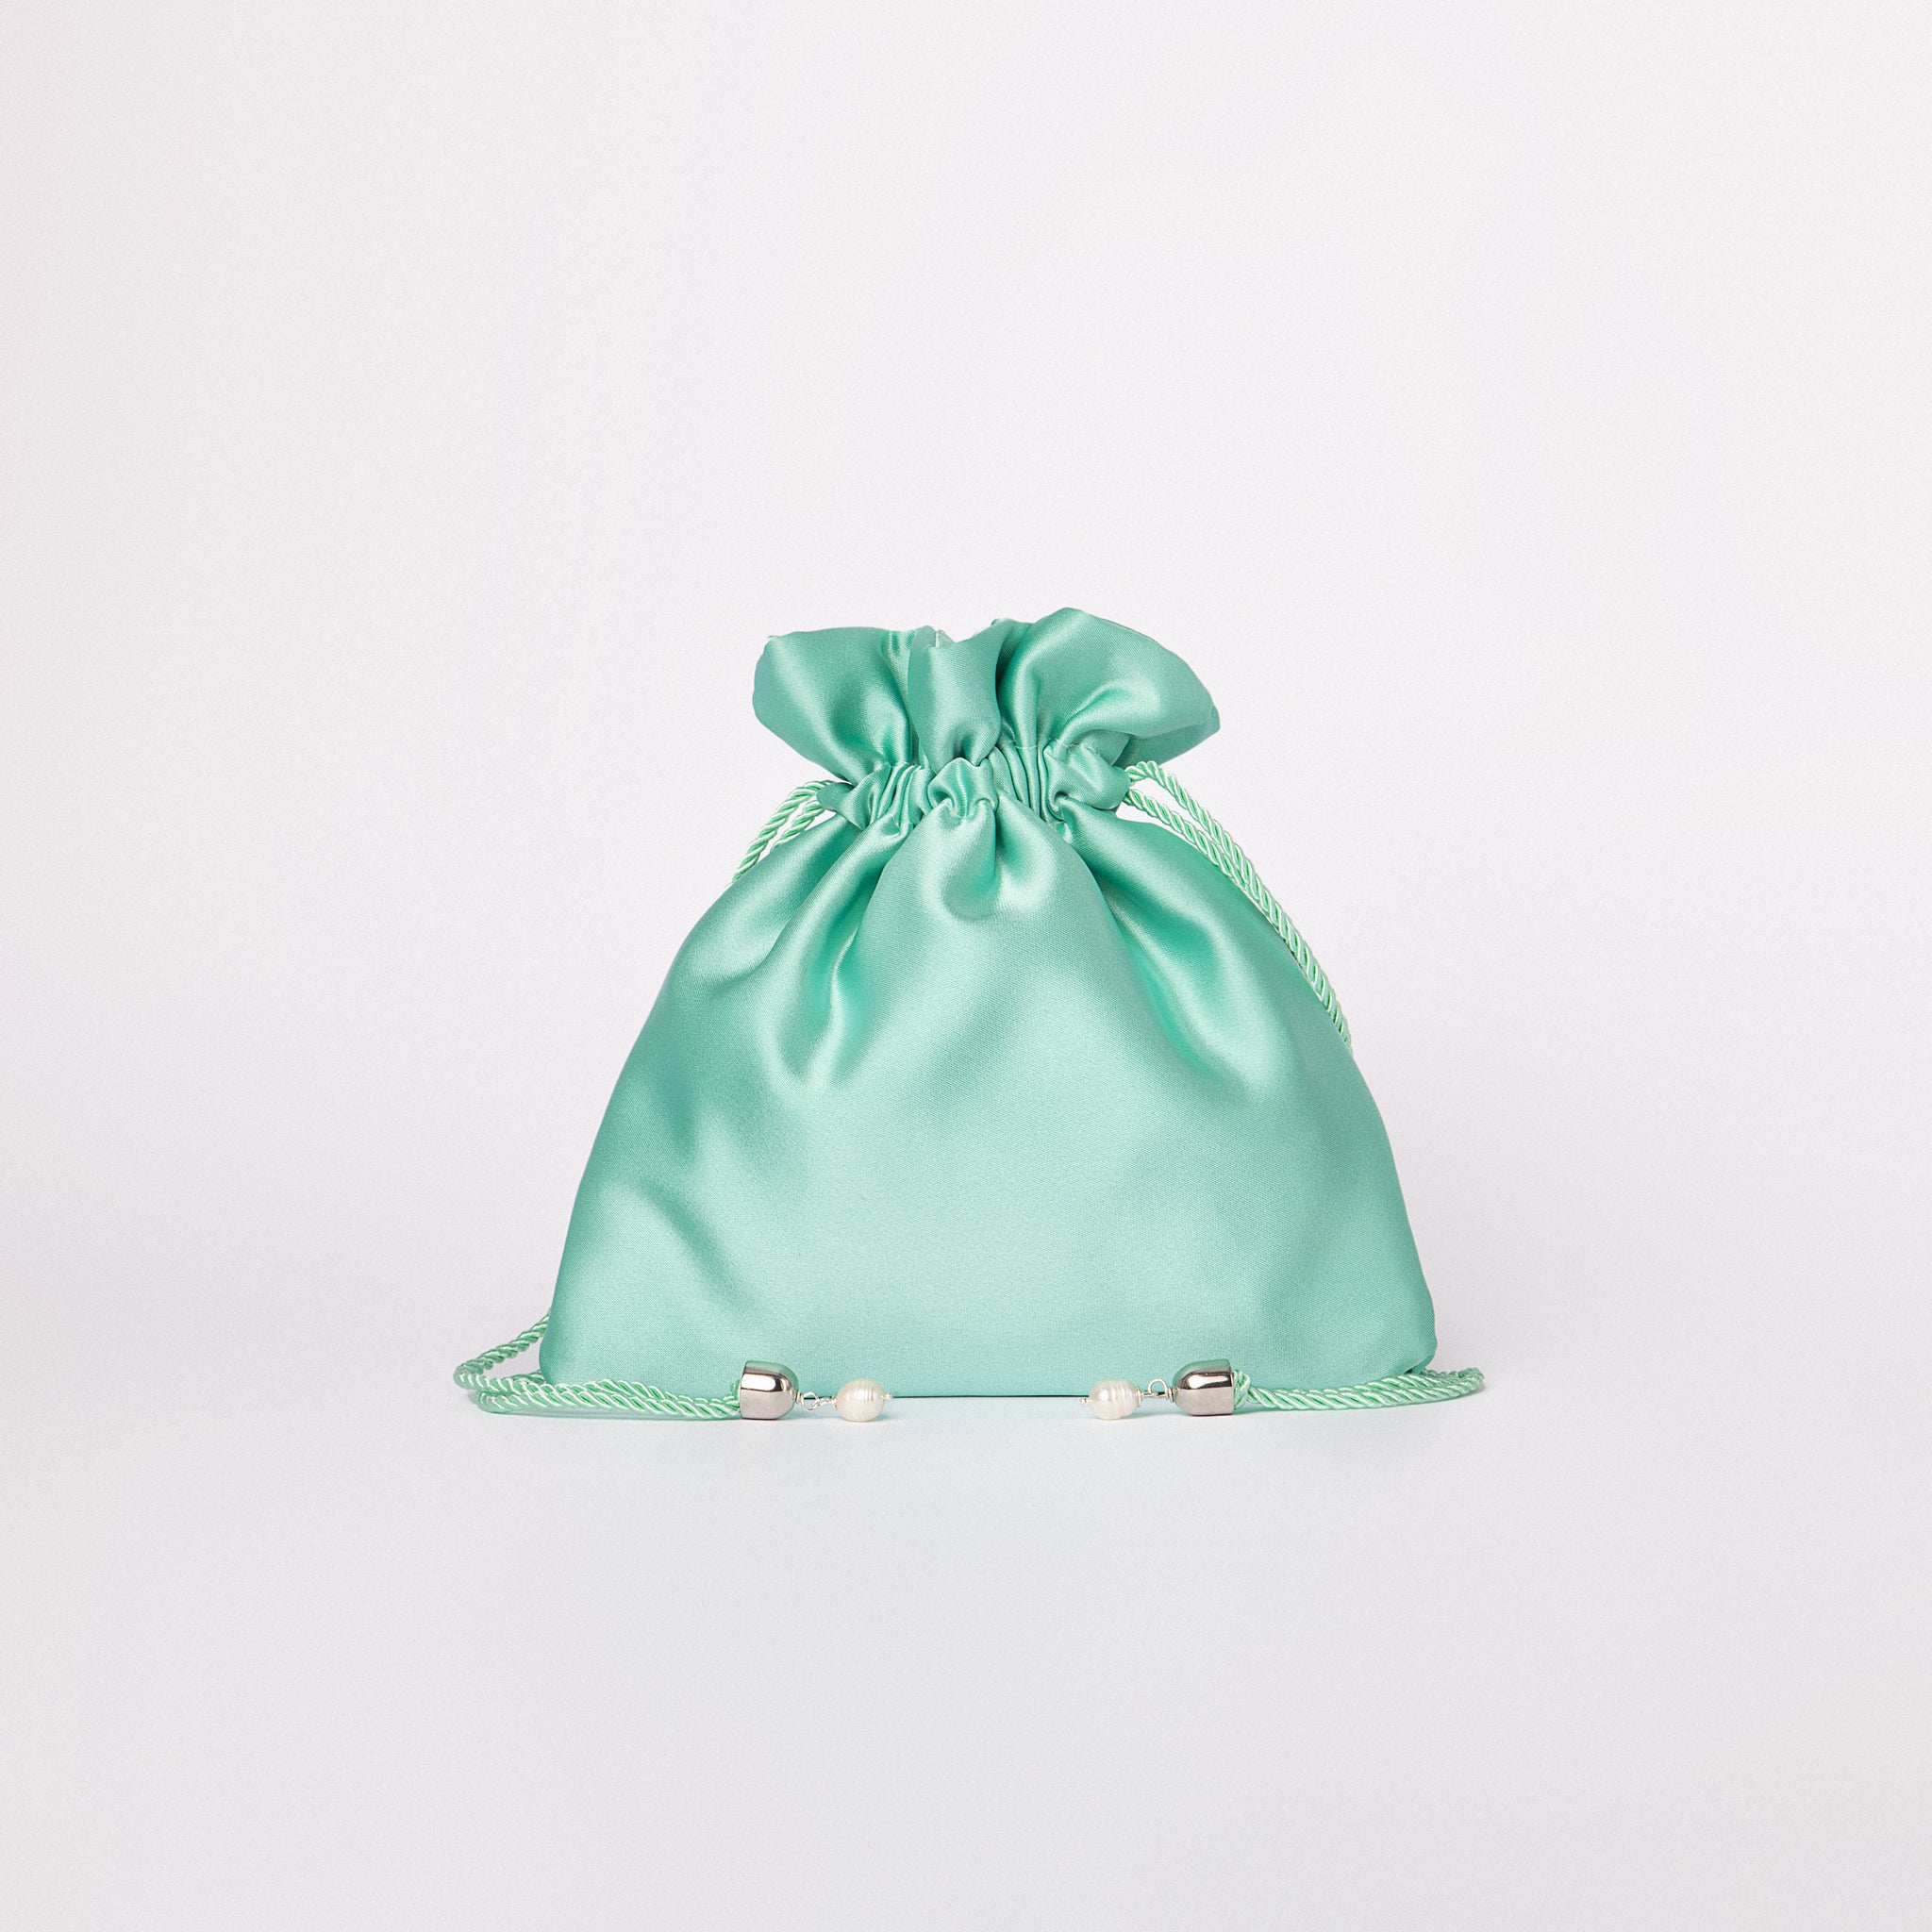 Mini Bag in colorazione tiffany